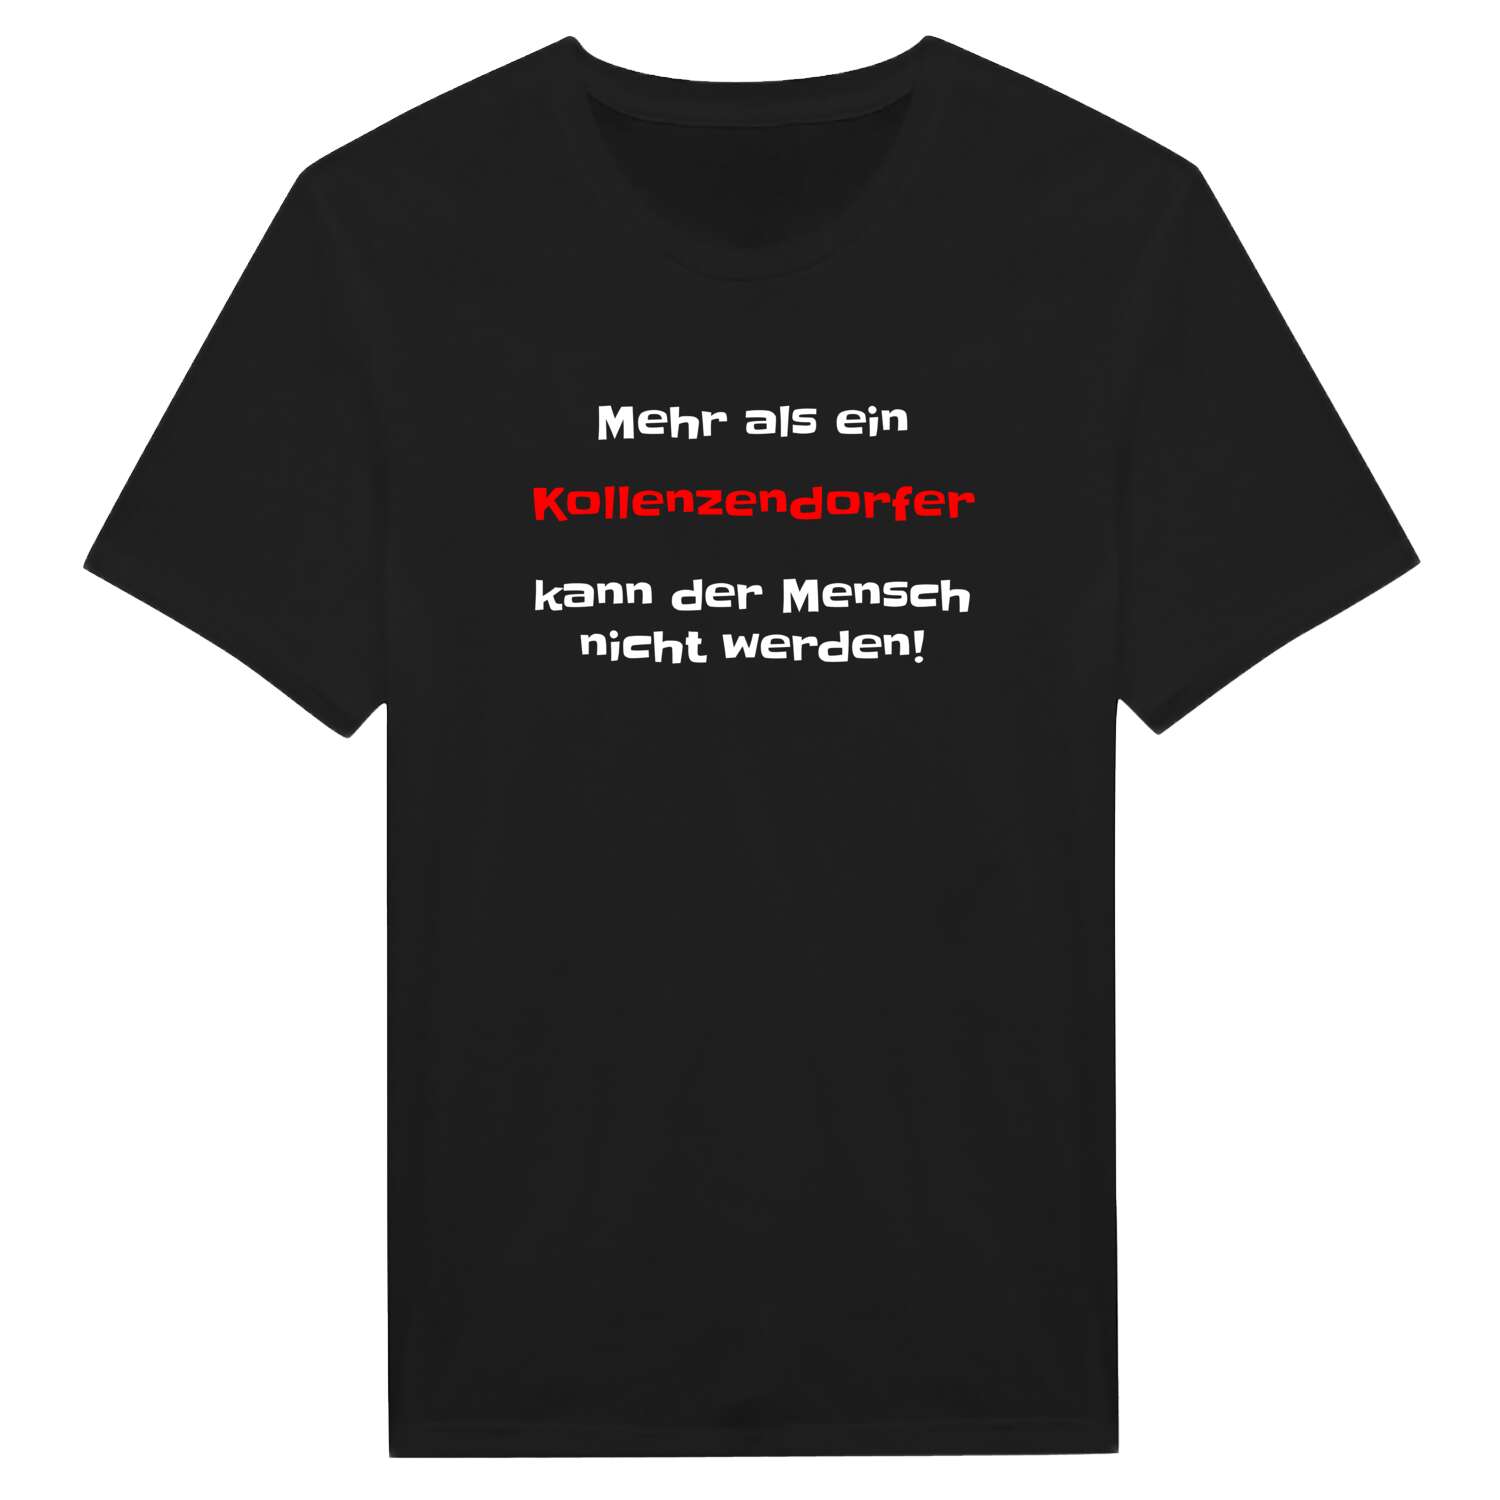 Kollenzendorf T-Shirt »Mehr als ein«